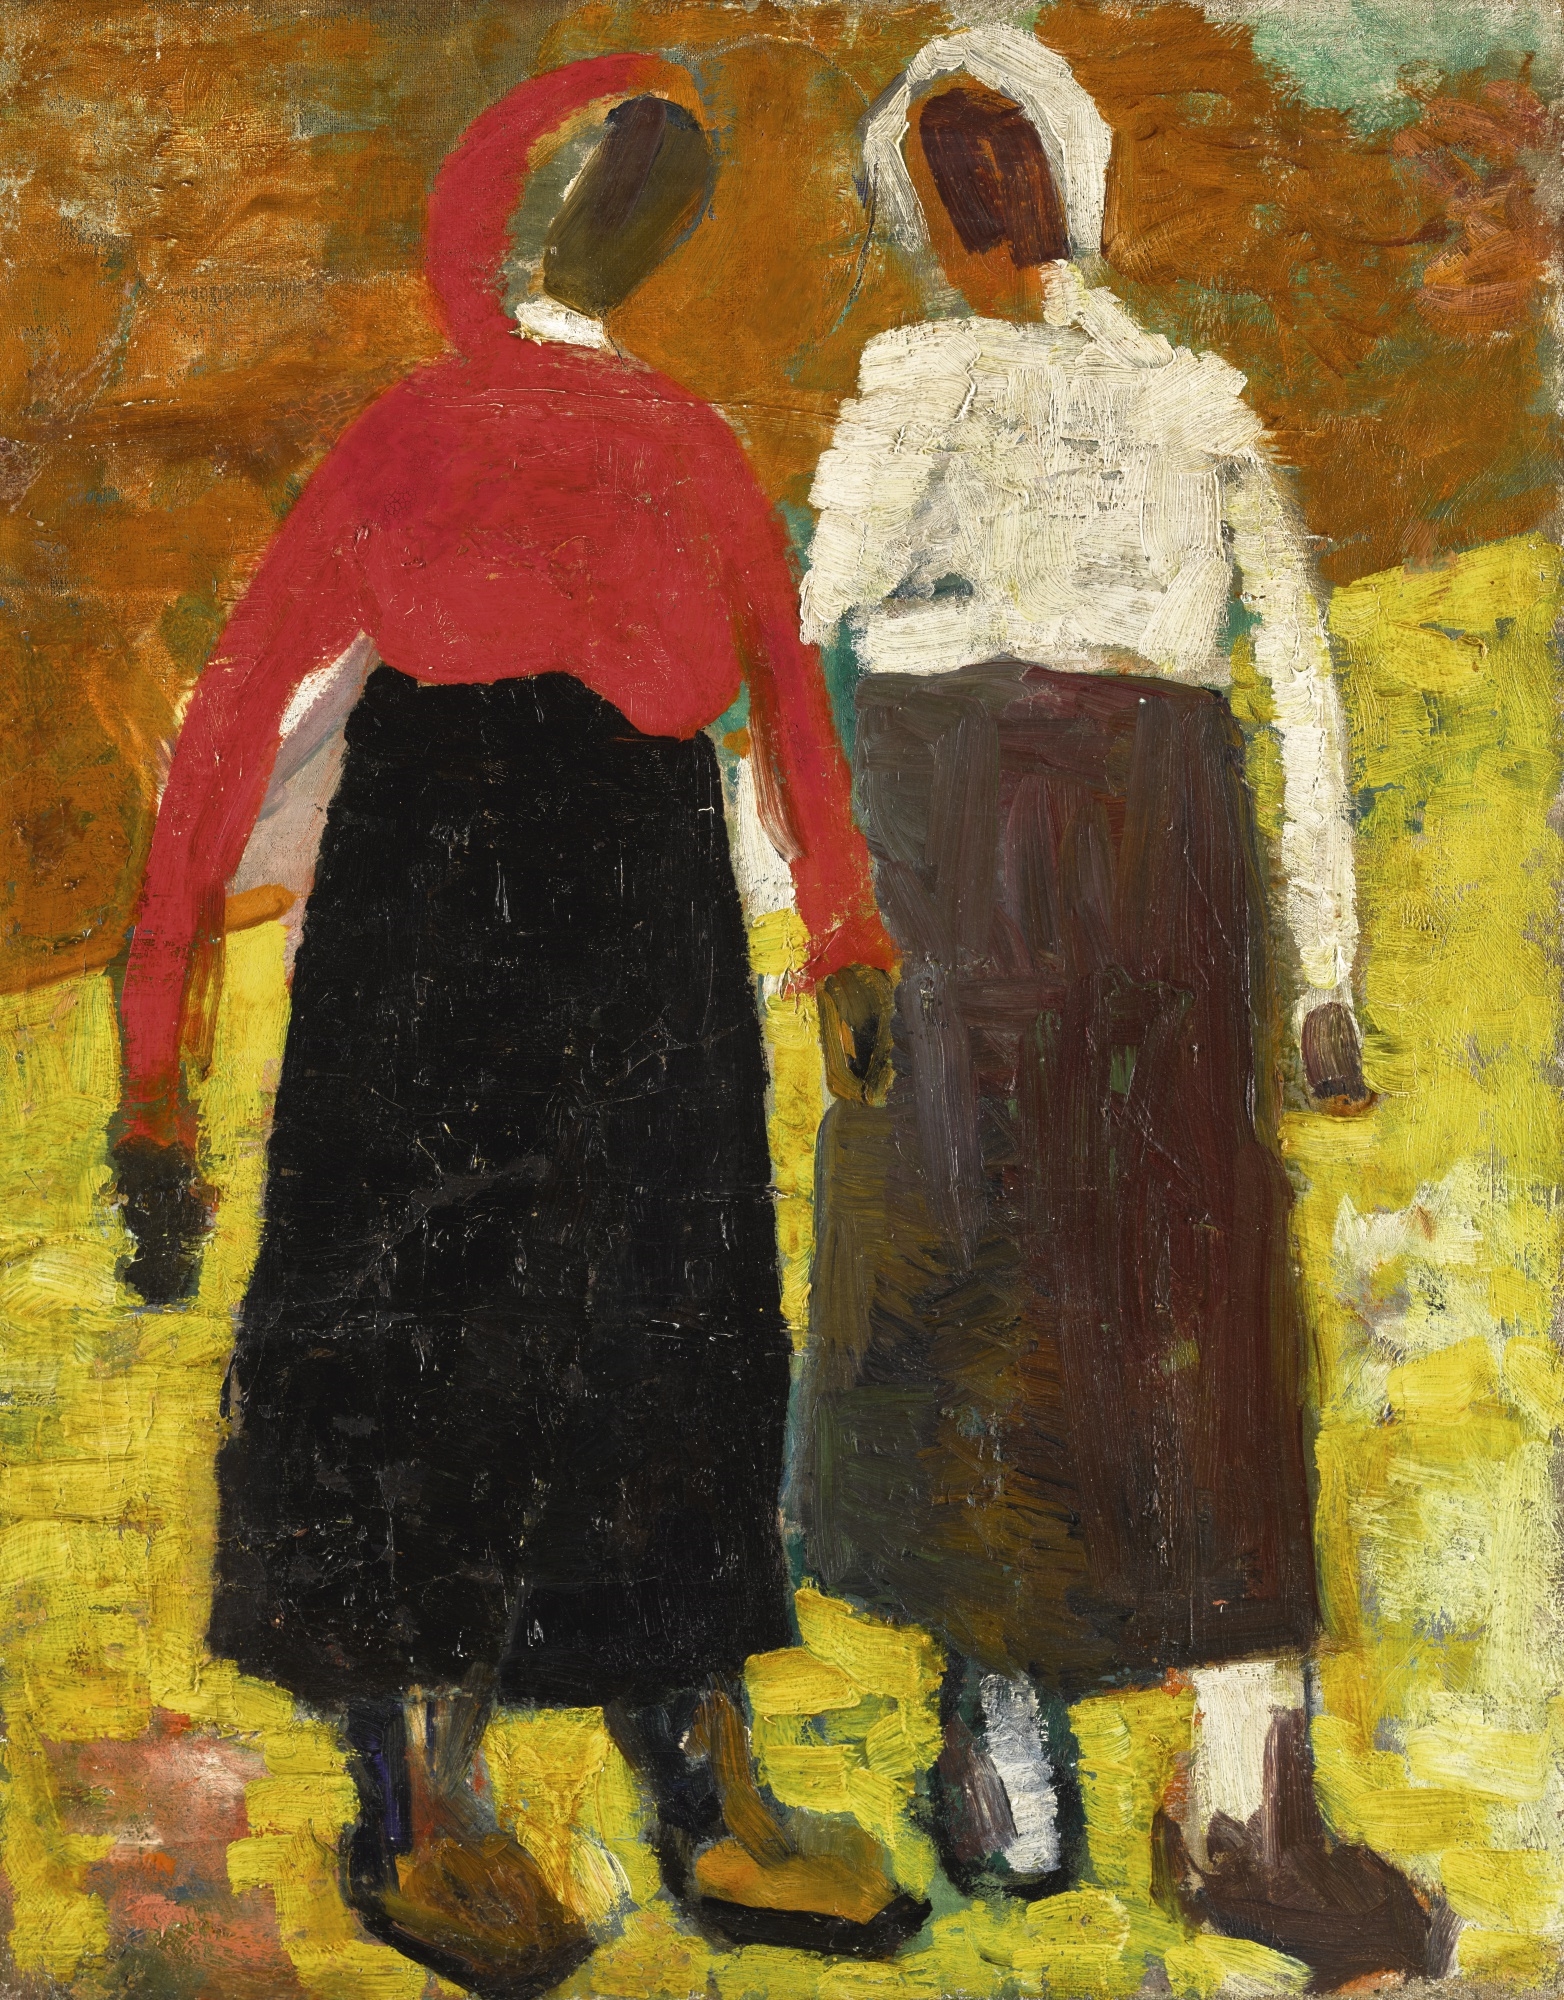 Two Peasant Women by Kazimir Malevich, circa 1928-1930